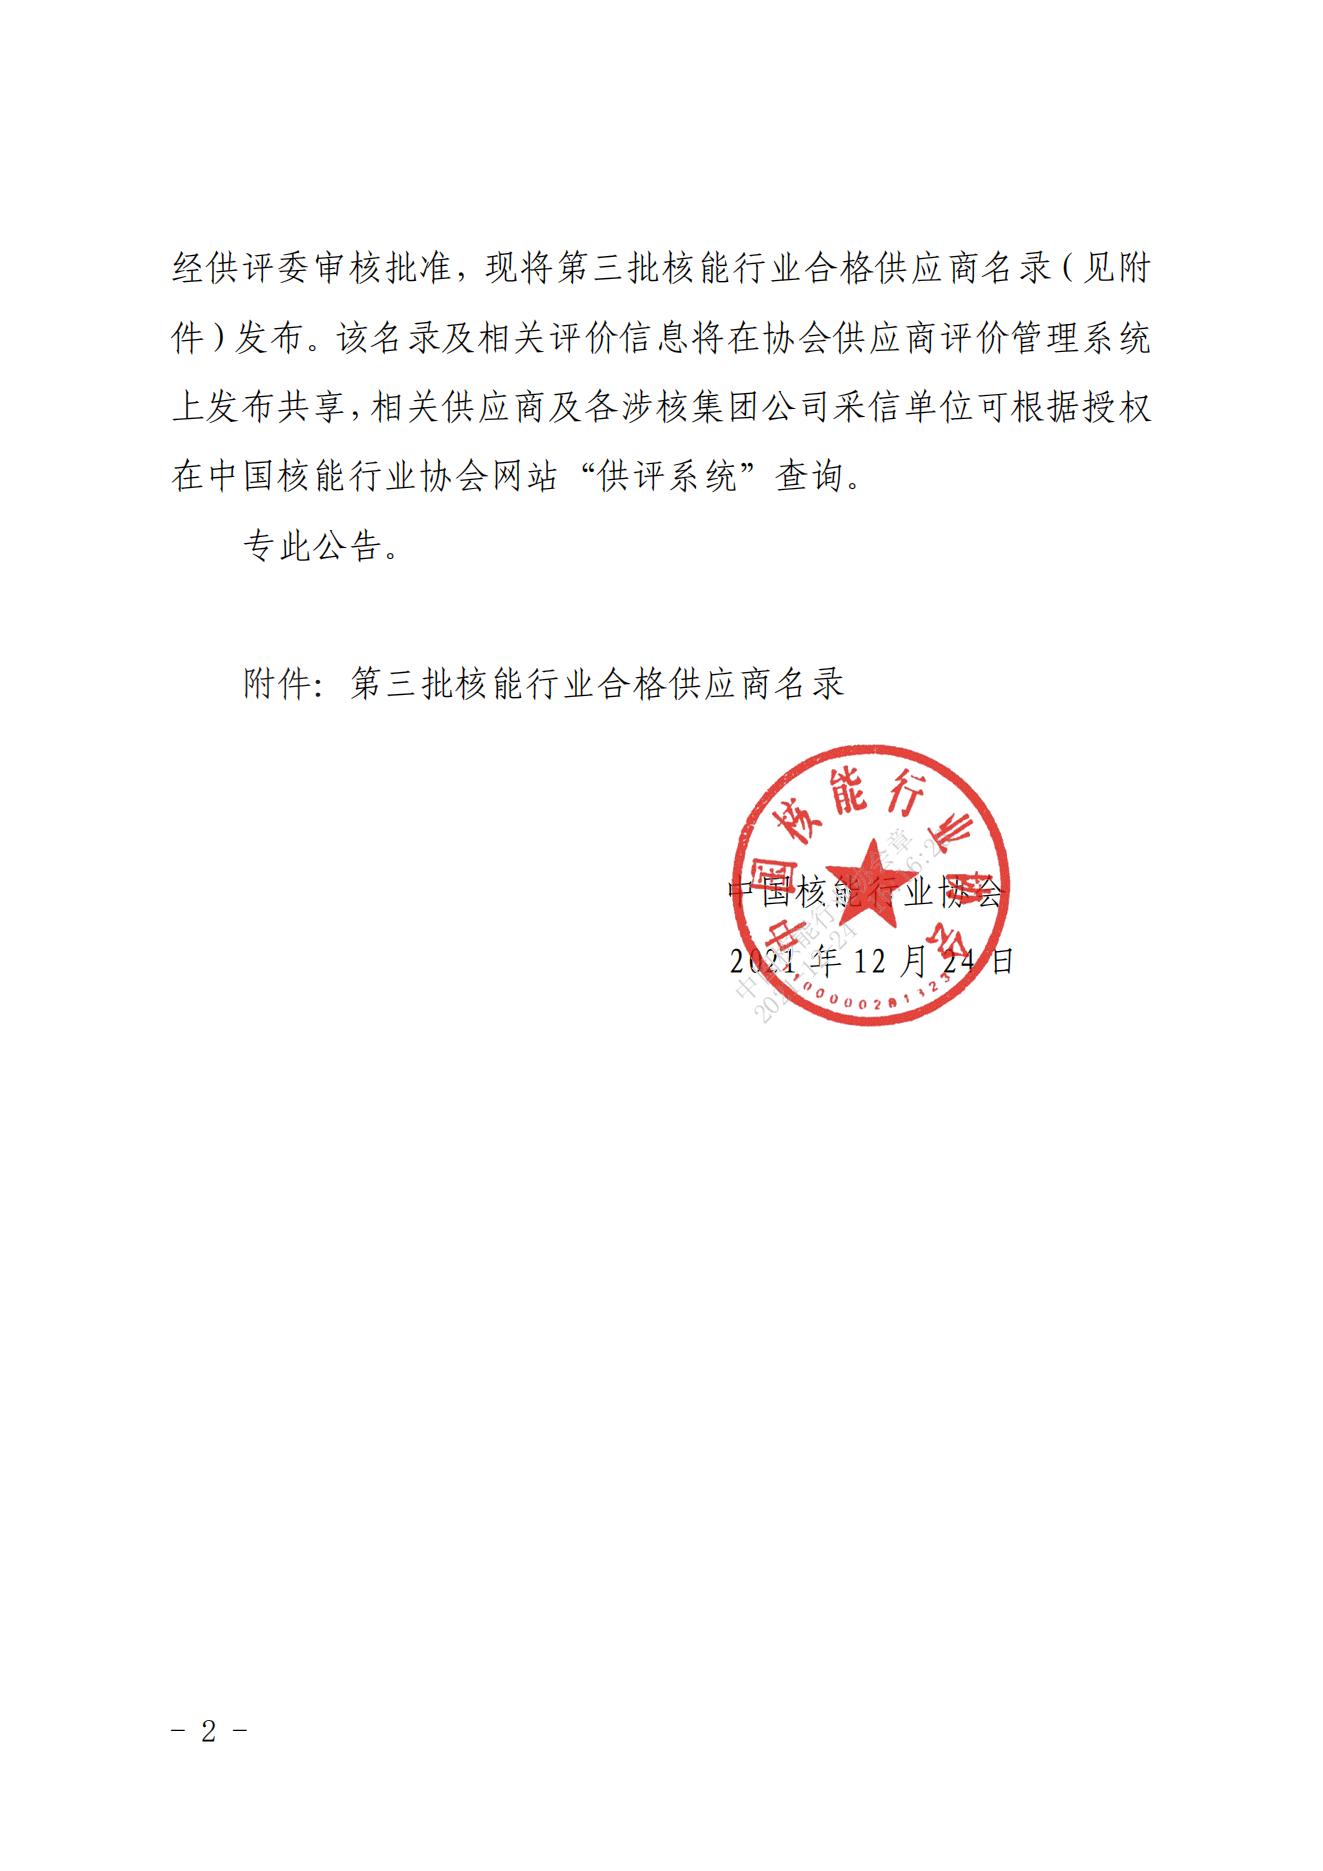 关于发布中国核能行业协会核能行业第三批合格供应商名录的公告_01.jpg